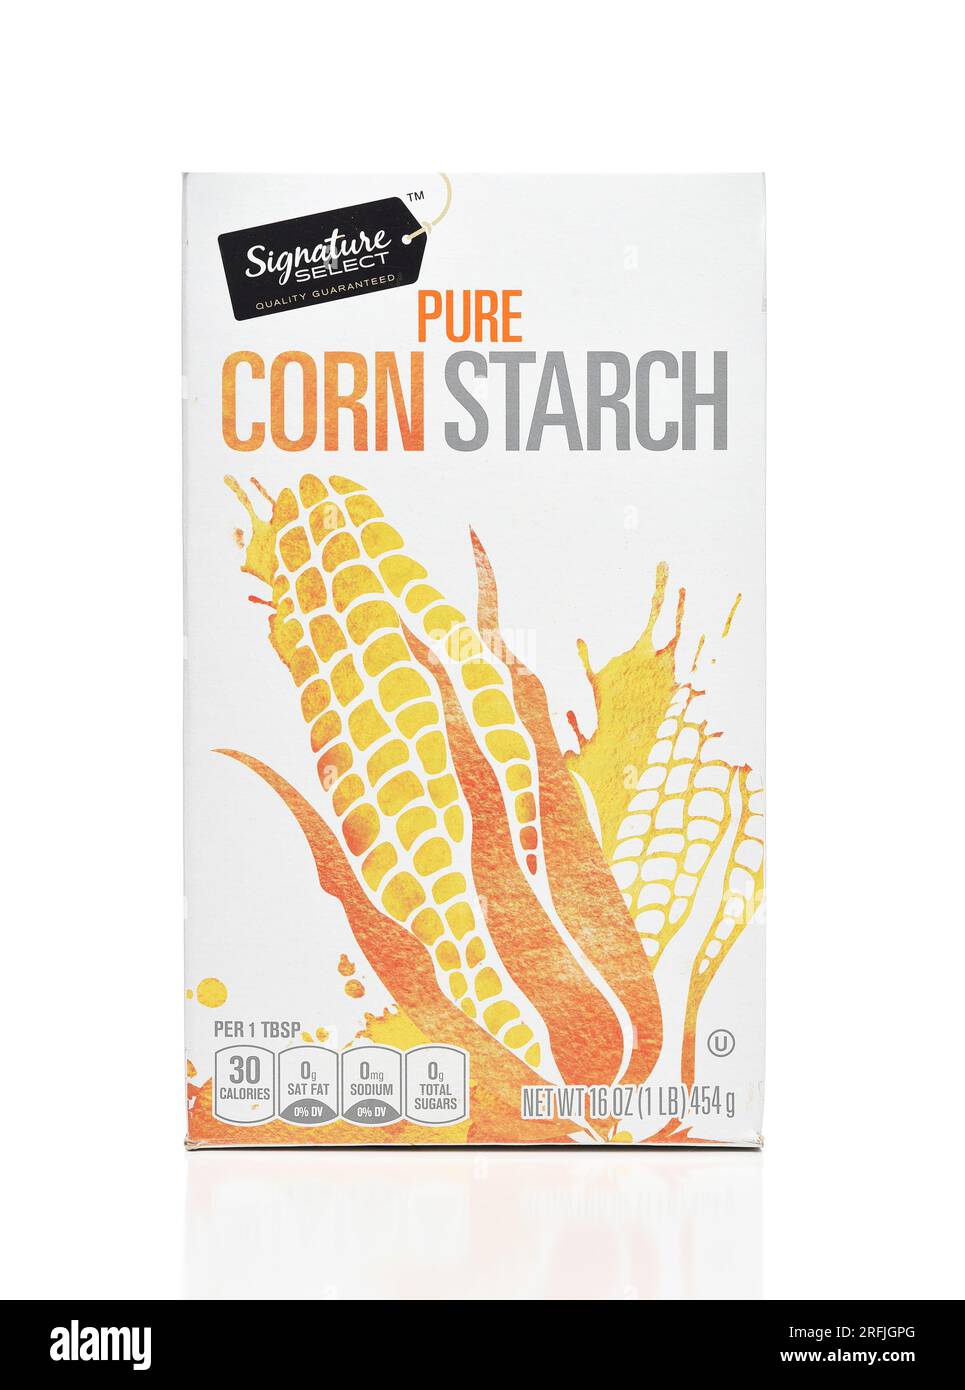 IRVINE, CALIFORNIA - 3 AUG 2023: A box of Signature Select Pure Corn Starch. Stock Photo